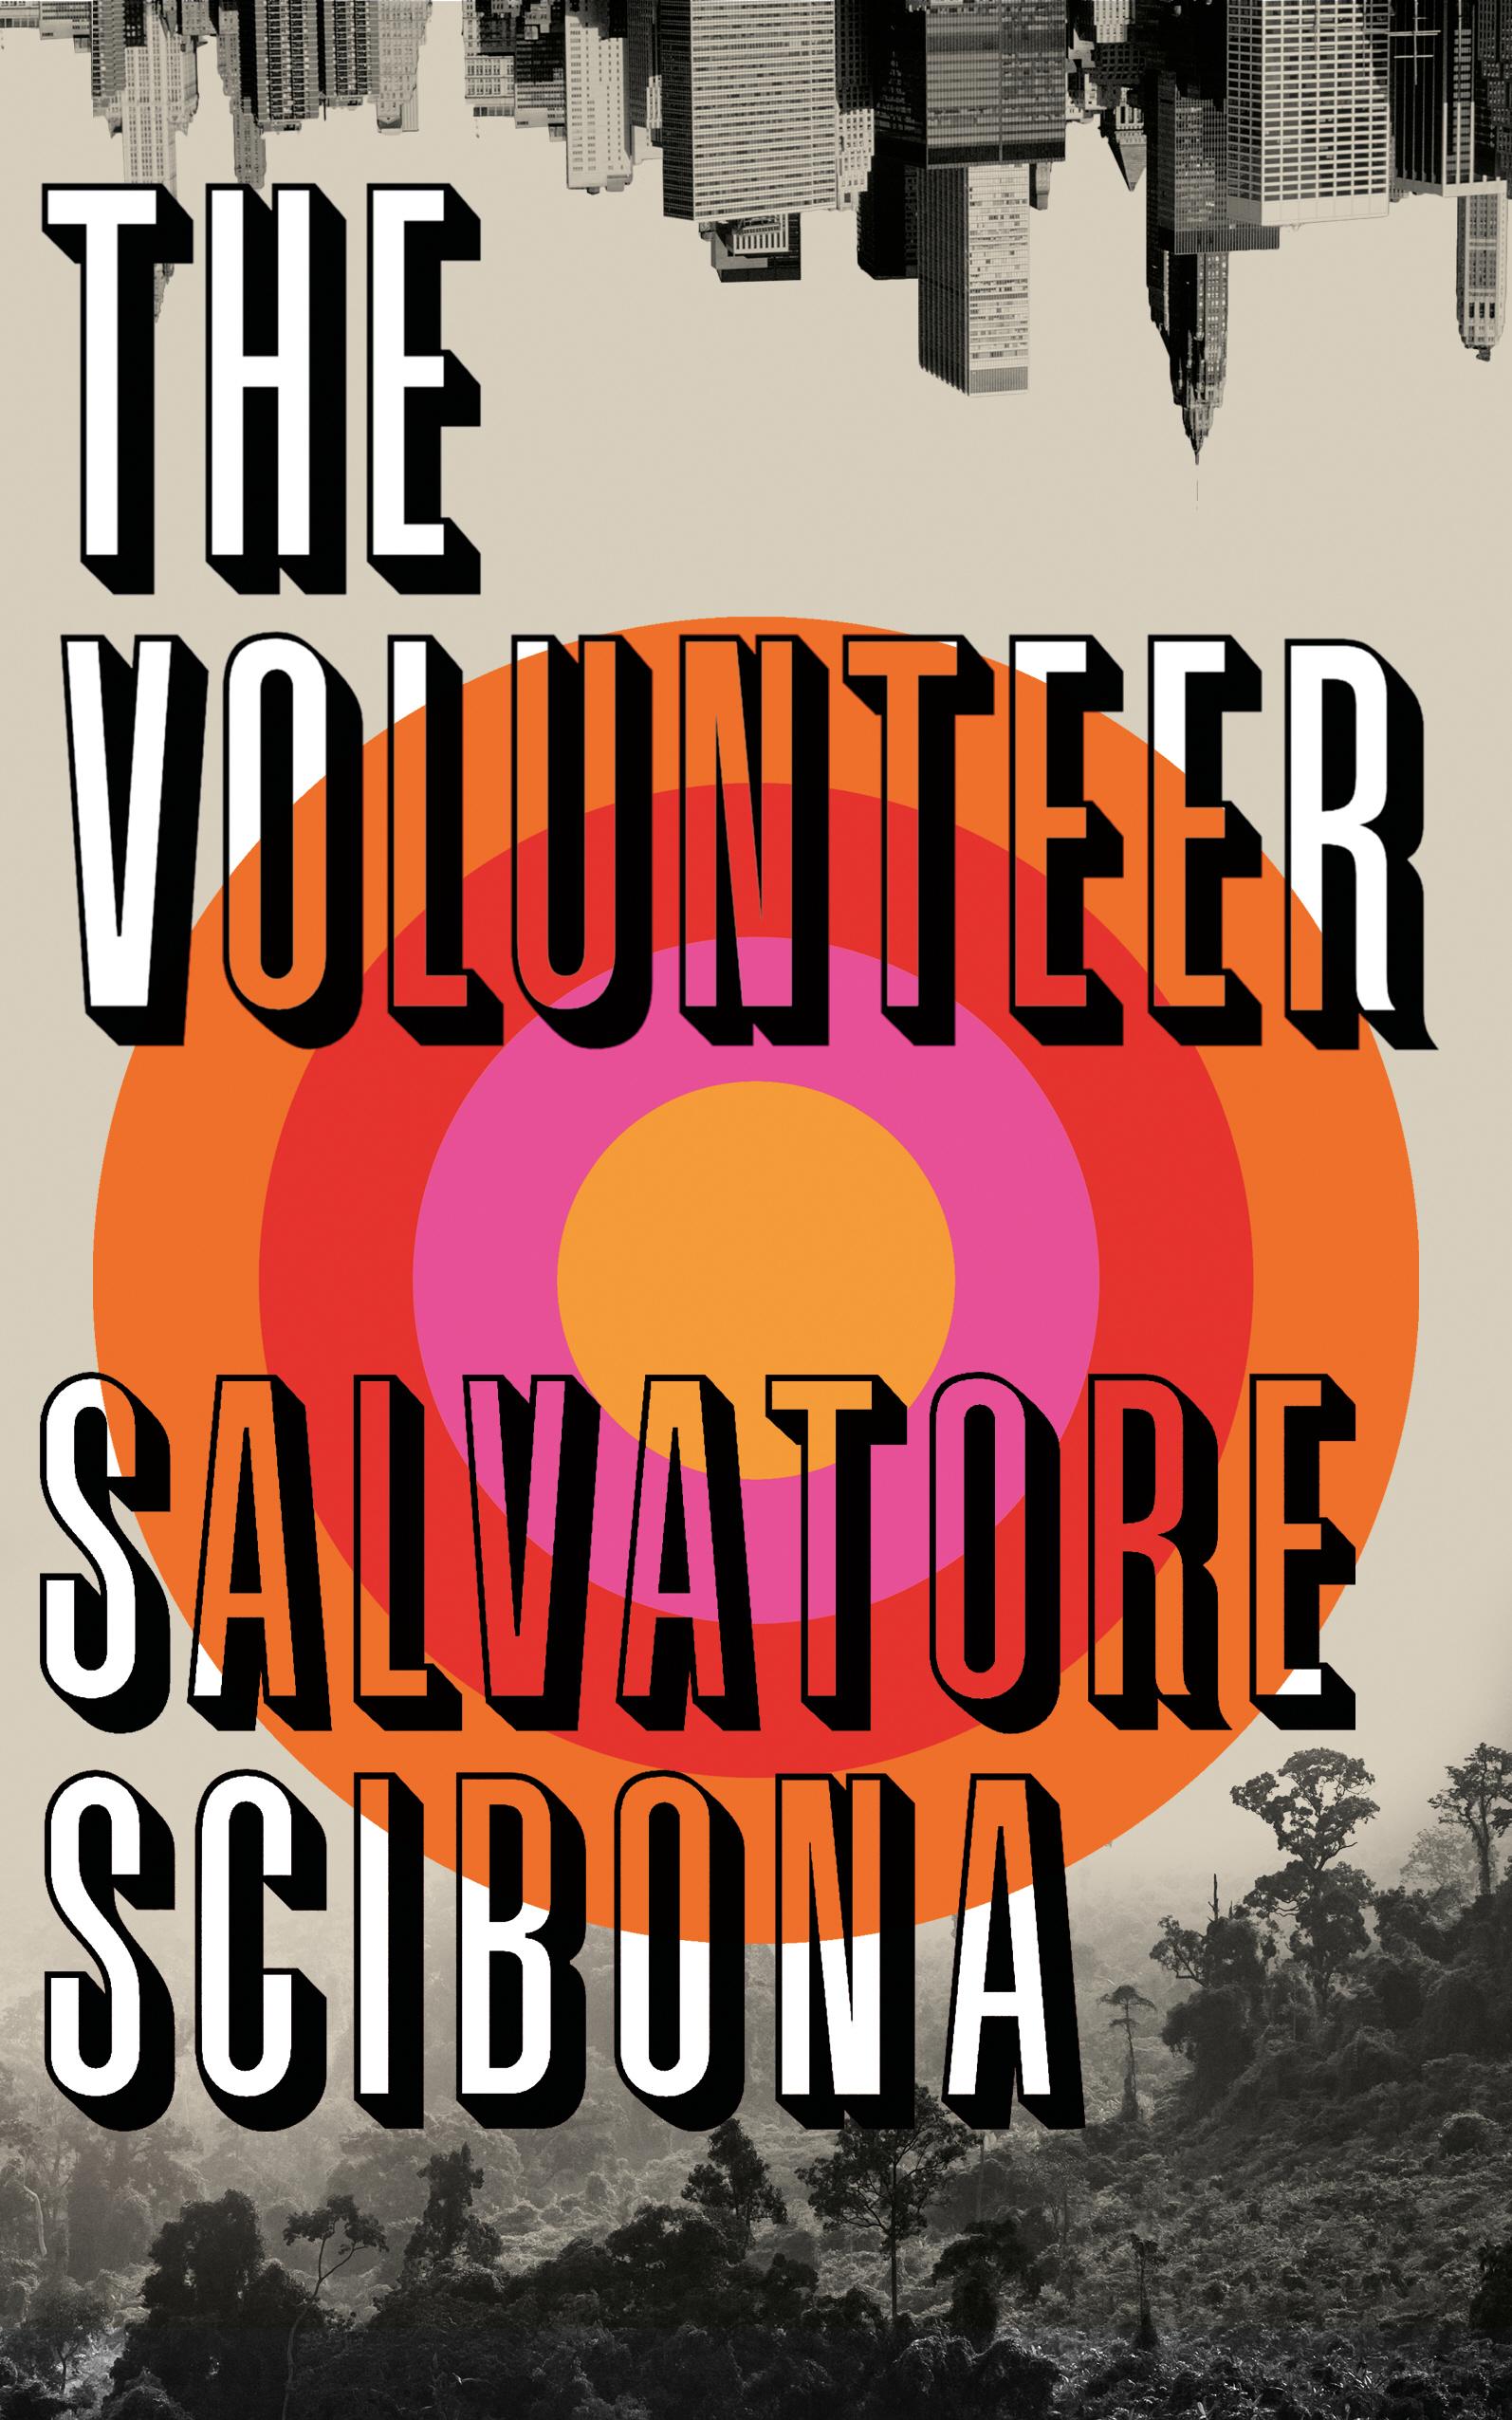 Volunteer - Salvatore Scibona